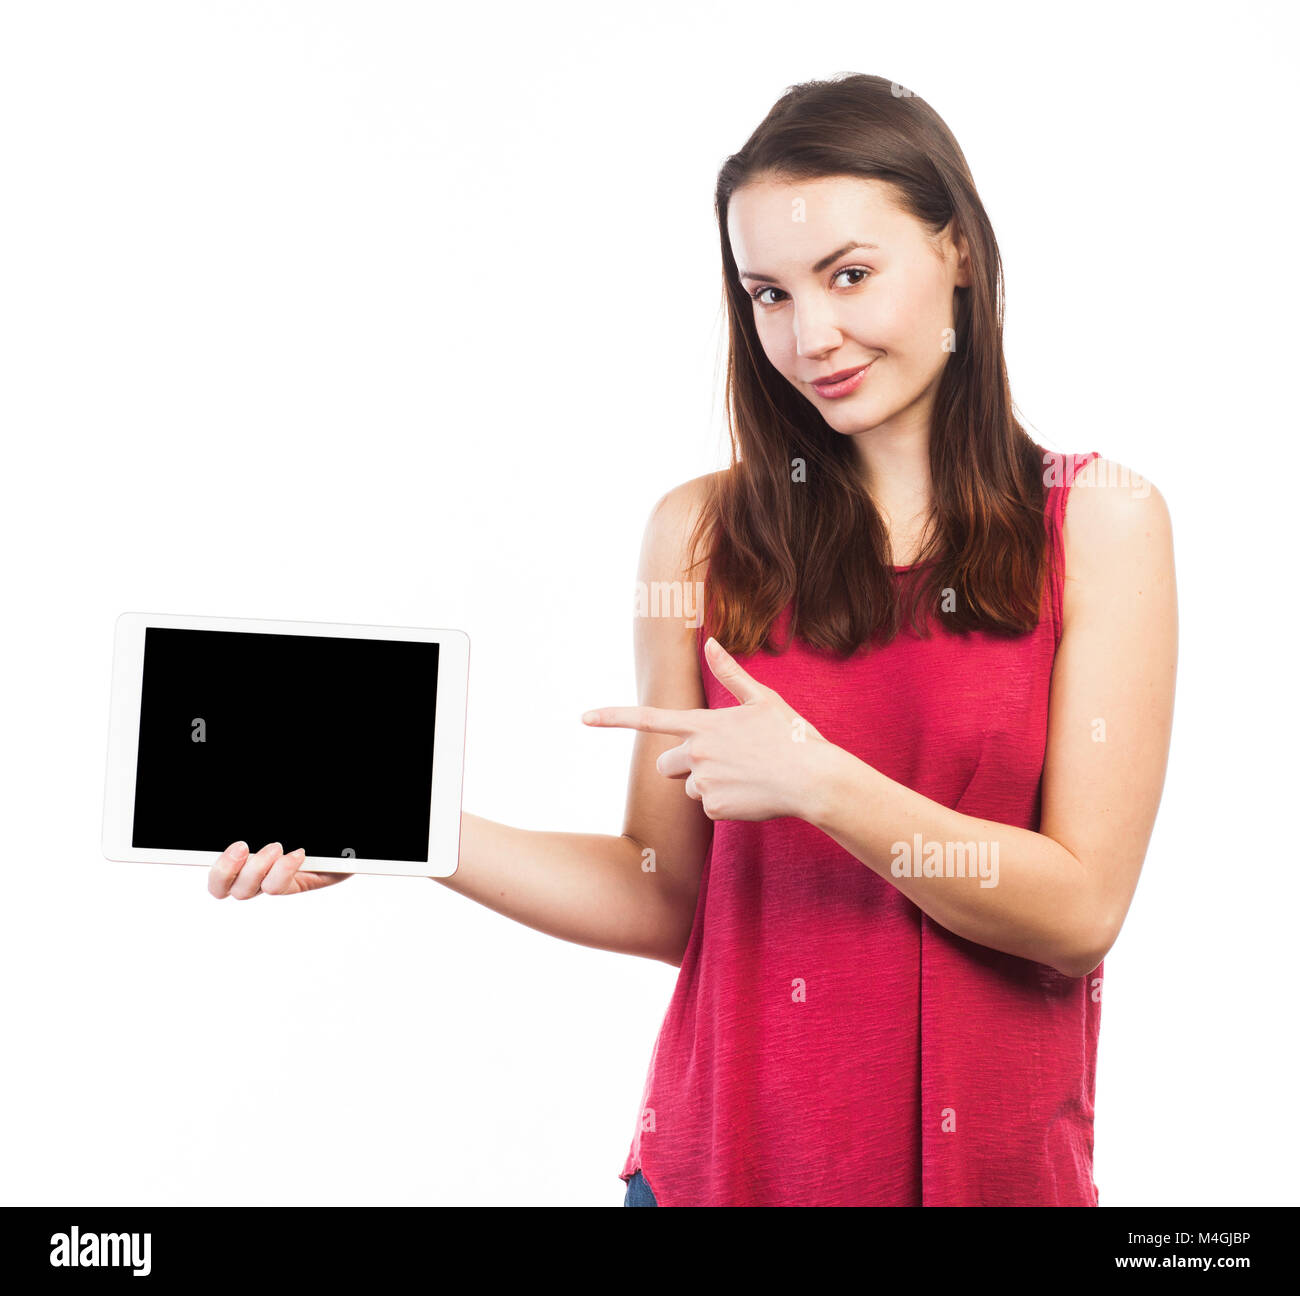 Mujer joven holding y mostrando la pantalla en blanco de una tableta electrónica, aislado en blanco Foto de stock